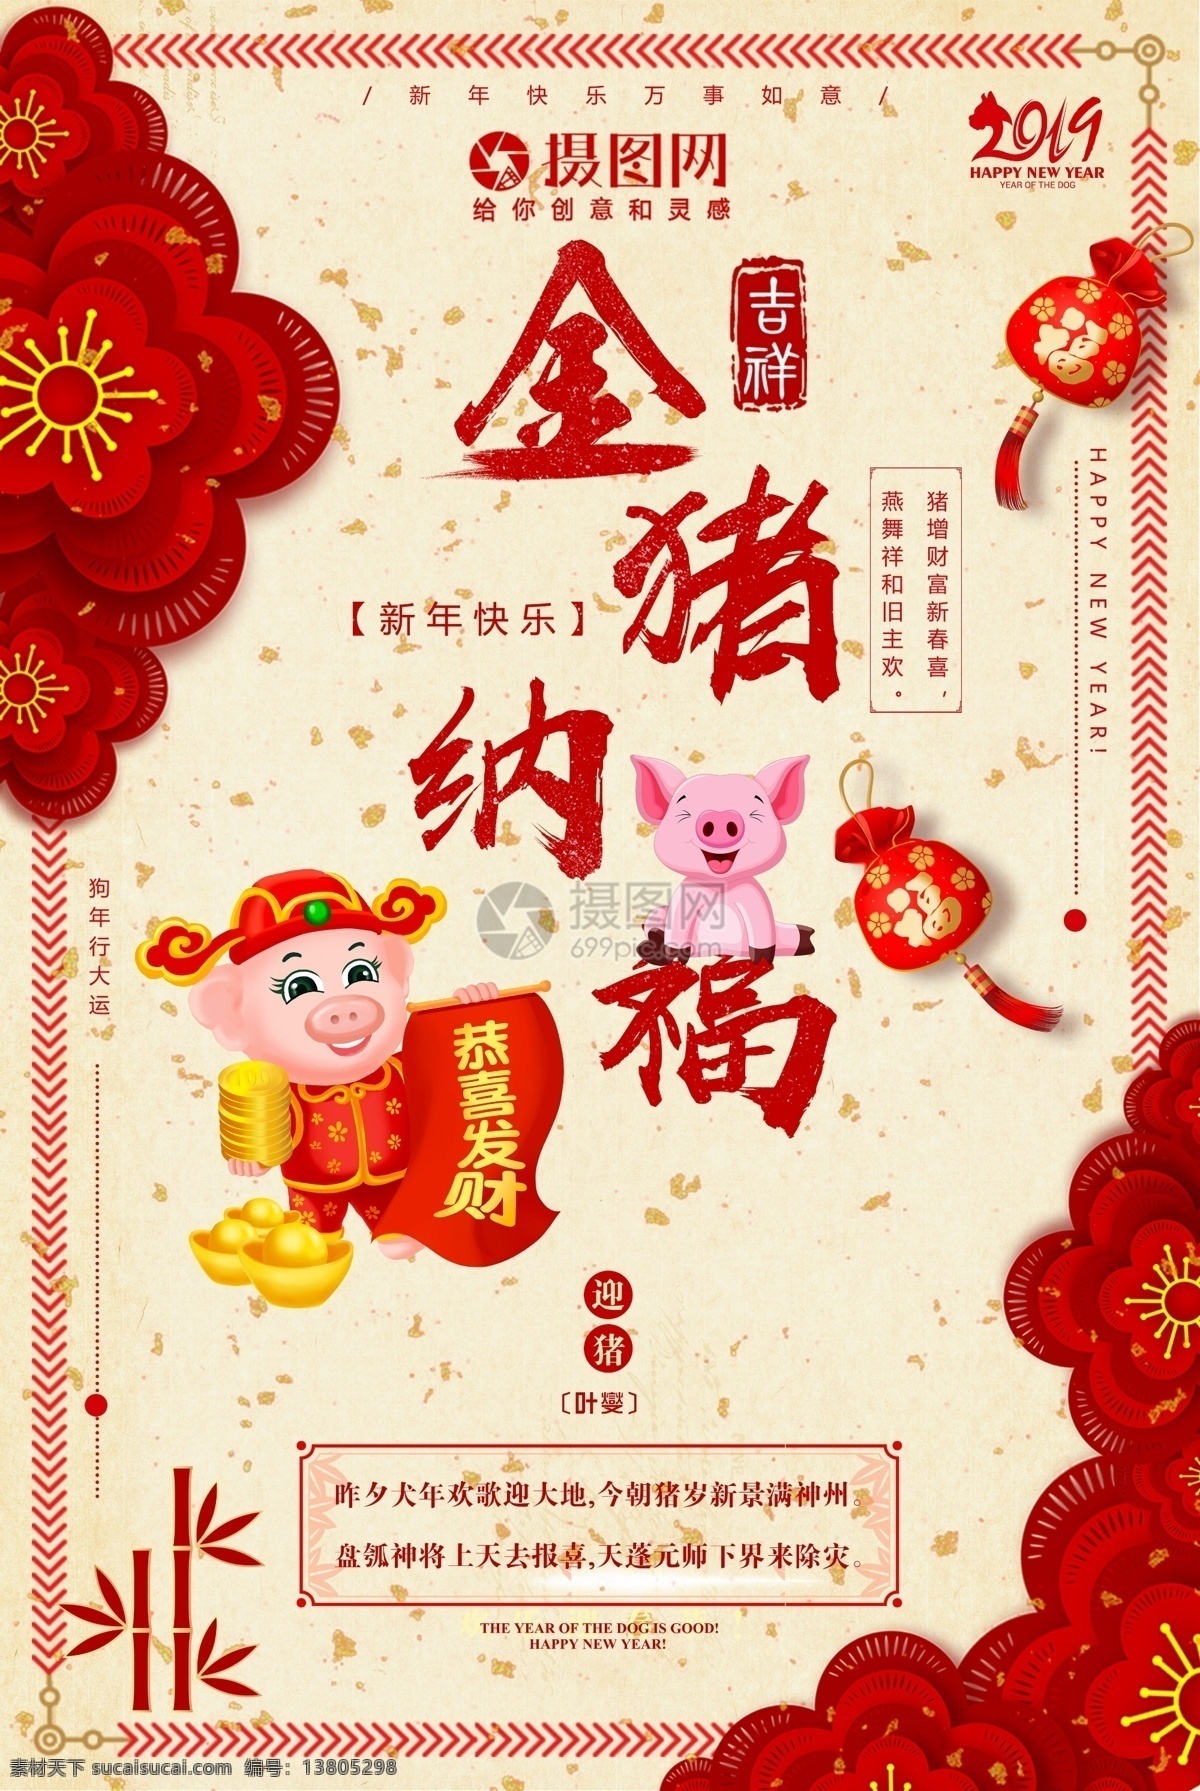 金 猪 纳福 2019 猪年 海报 红色 喜庆 喜迎 春节海报 新春海报 猪年海报 新年快乐 猪年吉祥